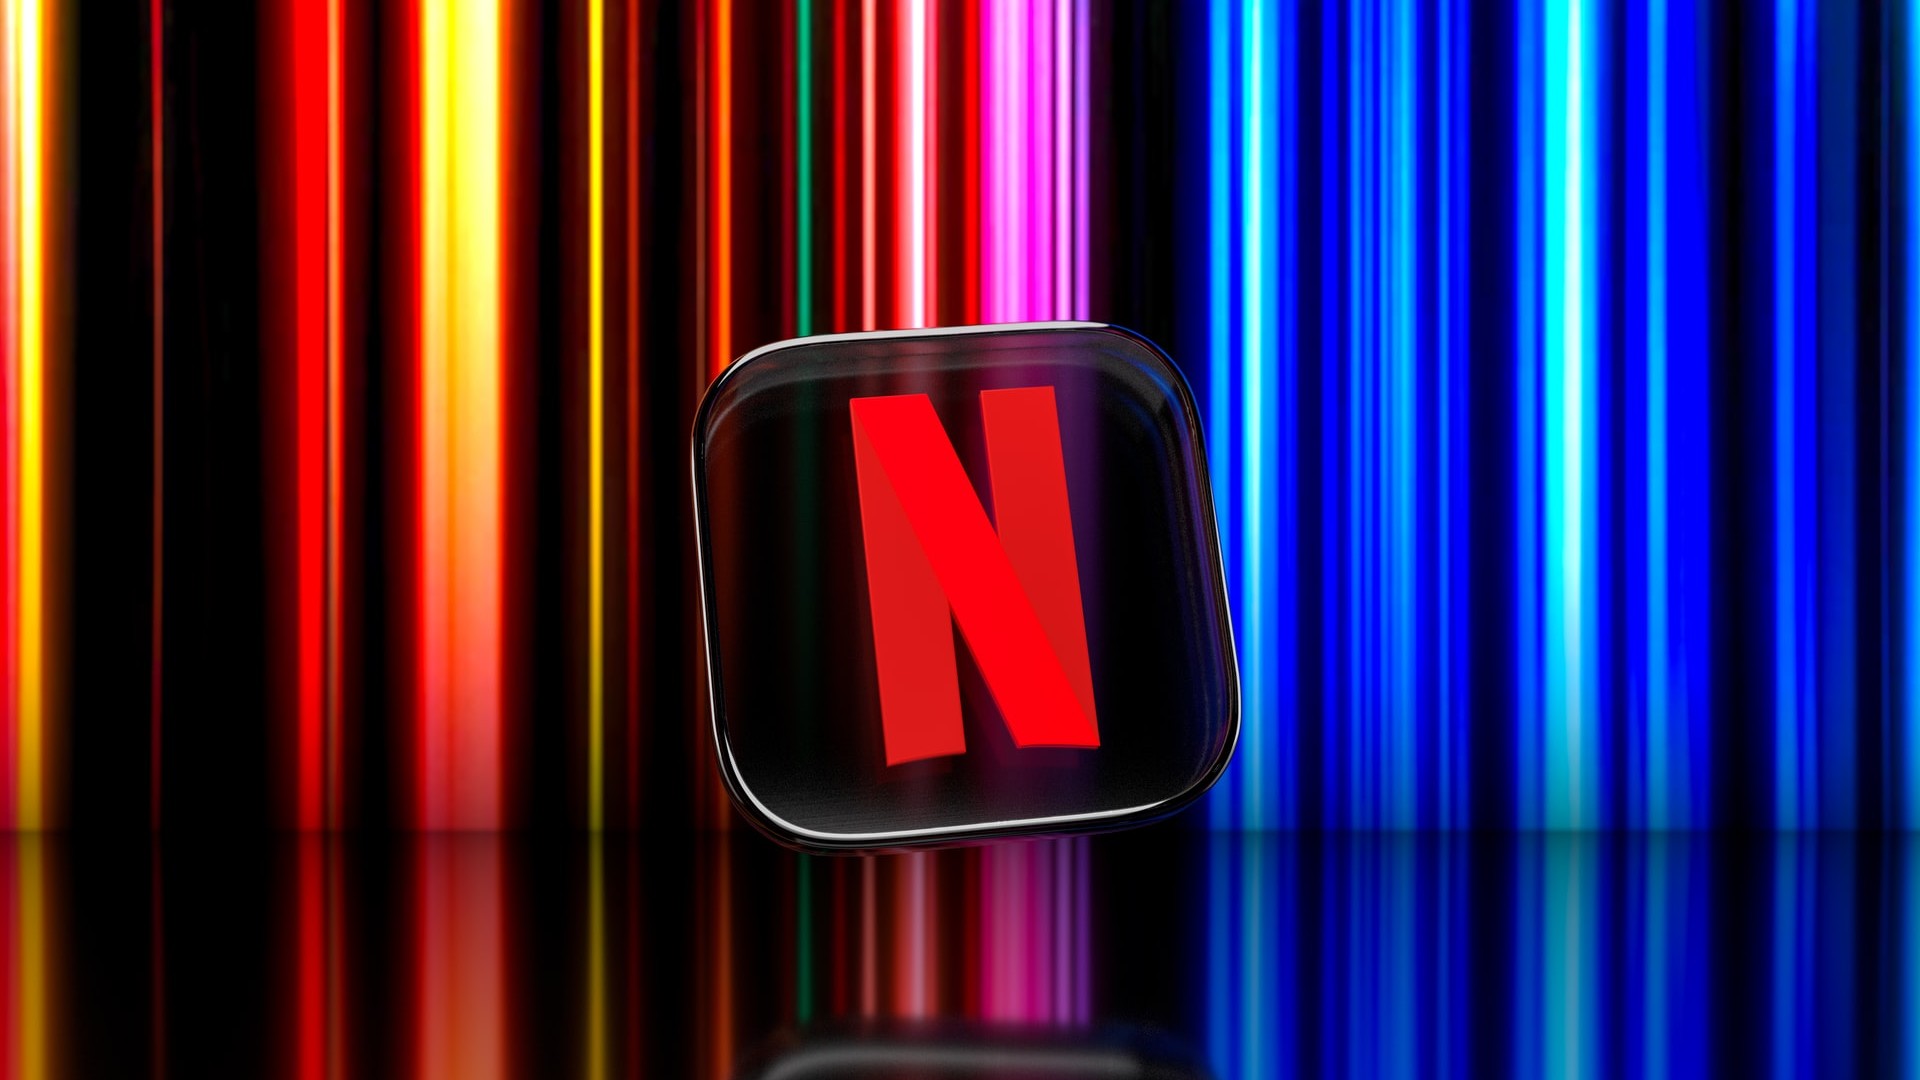 Netflix elimina plano Básico e deixa o com publicidade como alternativa